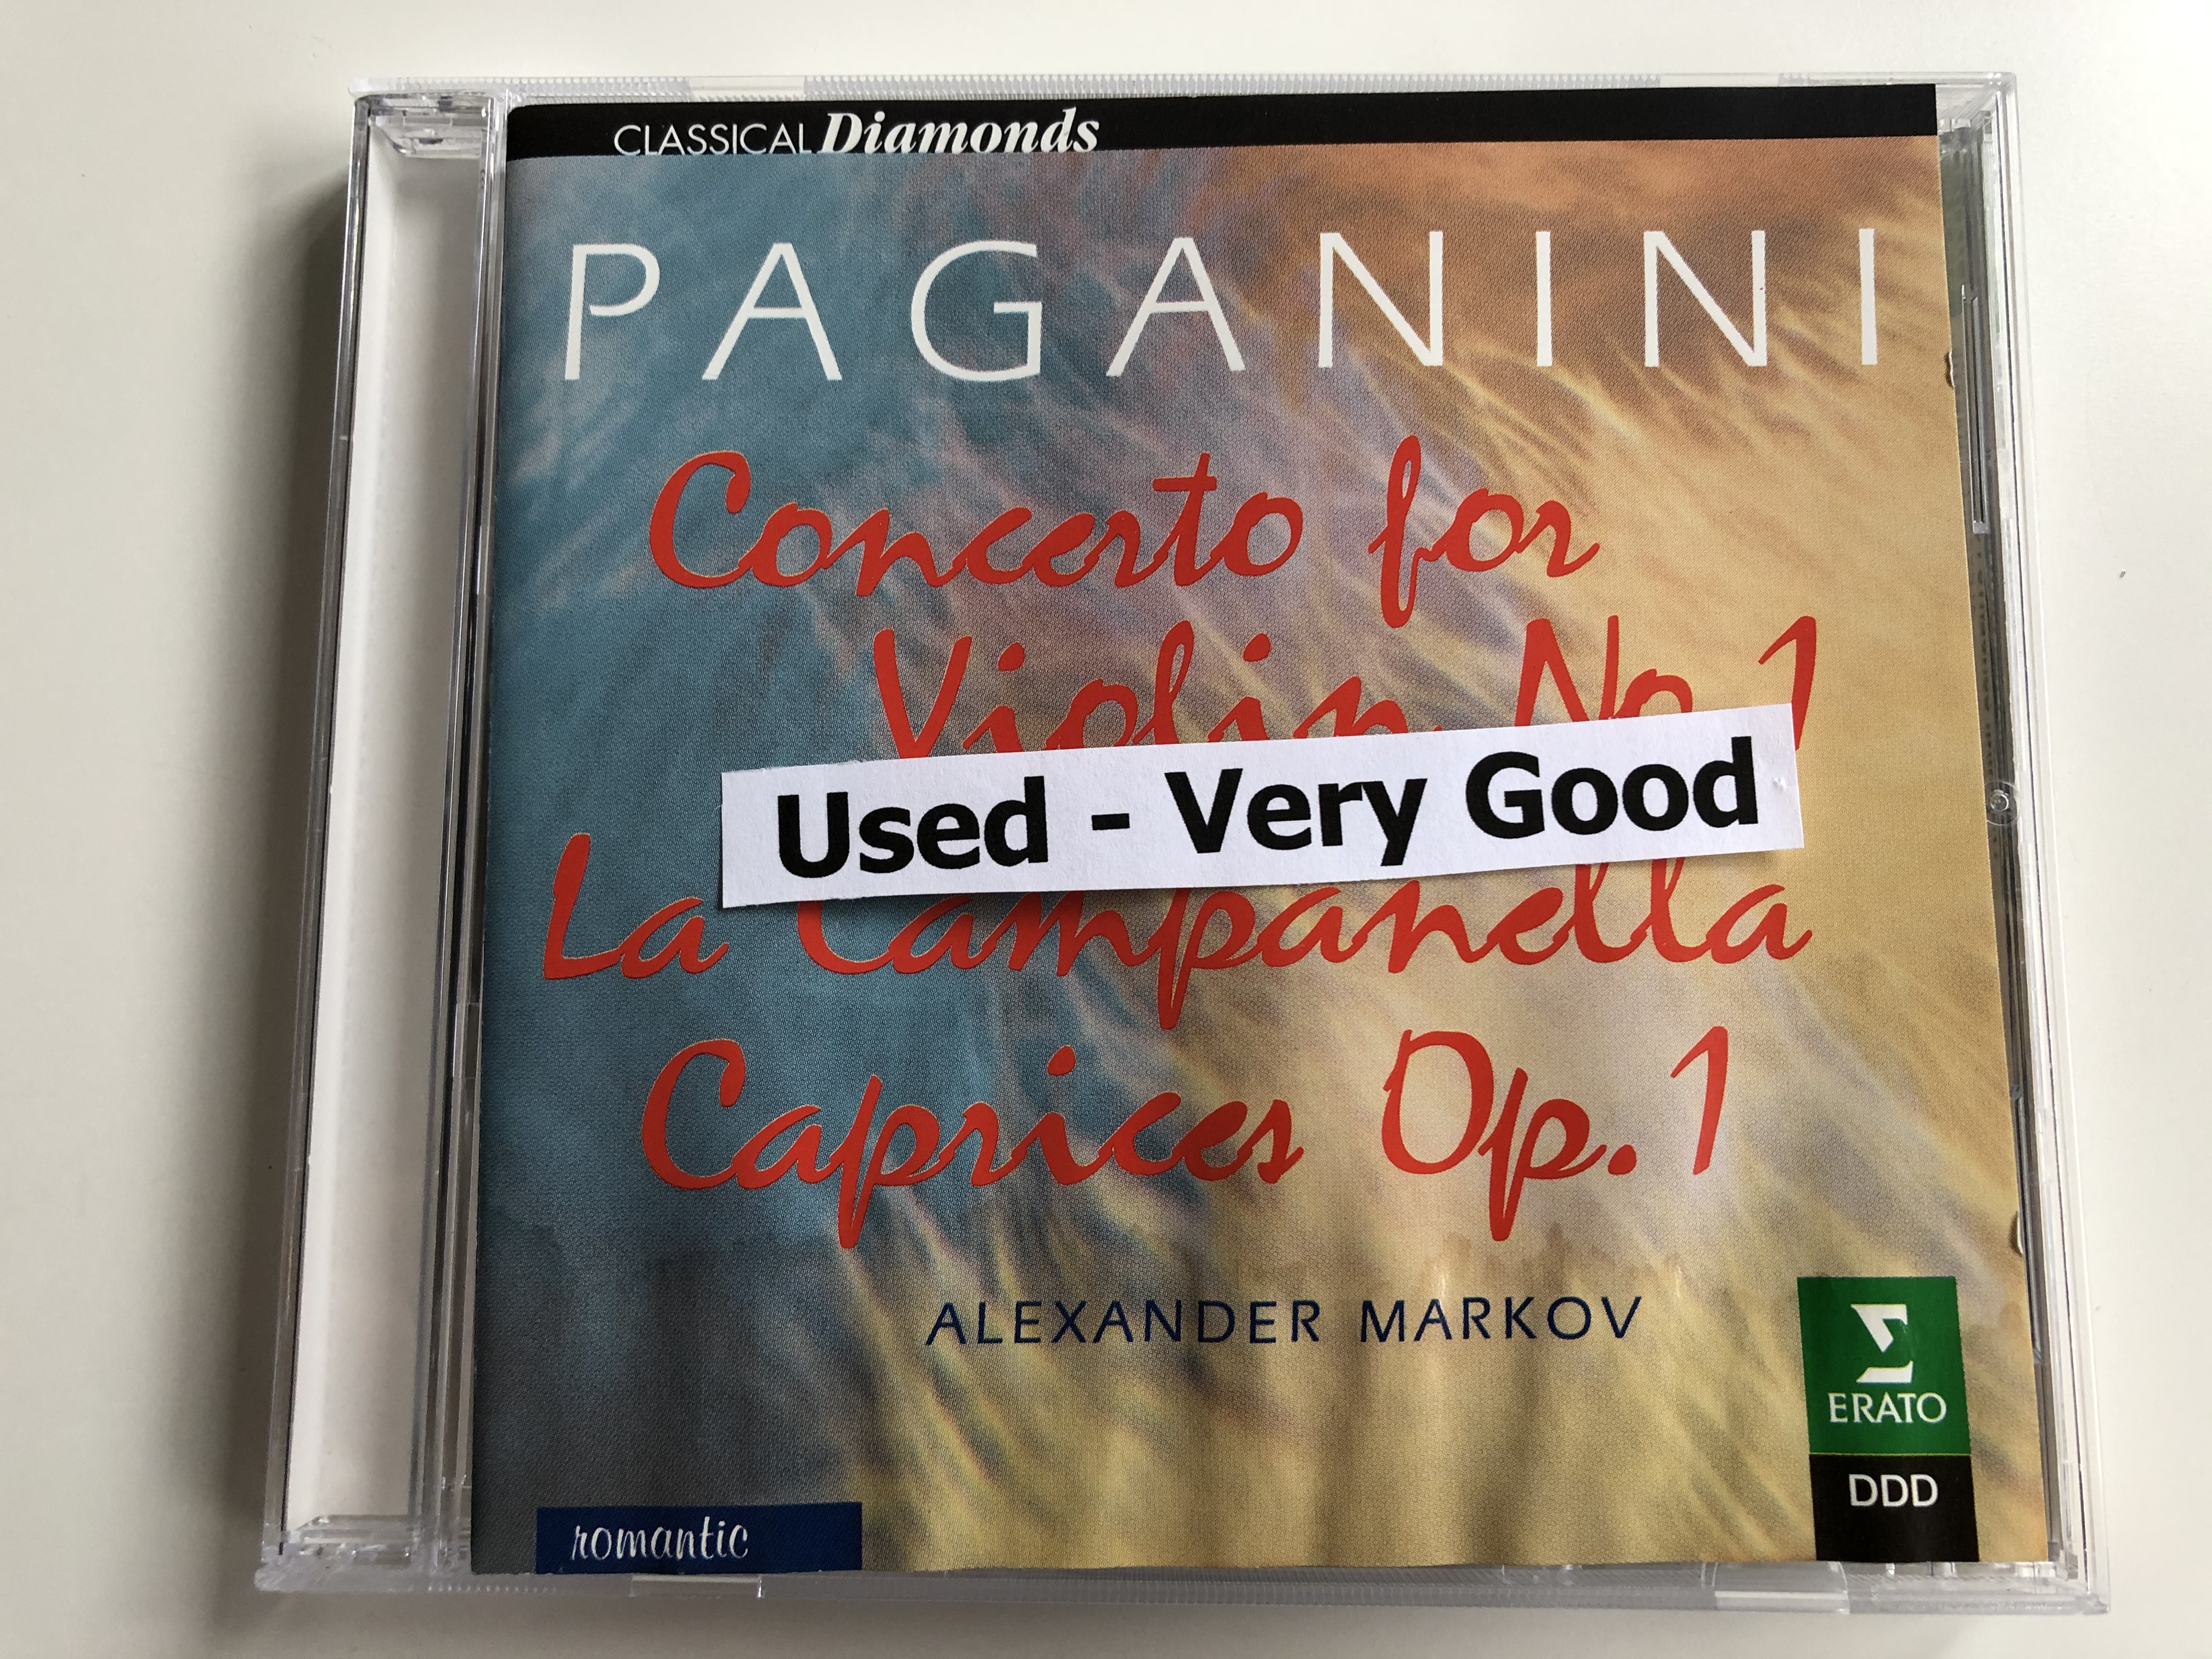 paganini-concerto-for-violin-no.-1-la-campanella-caprices-op.-1-alexander-markov-erato-audio-cd-1997-stereo-3984-21324-2-2-.jpg